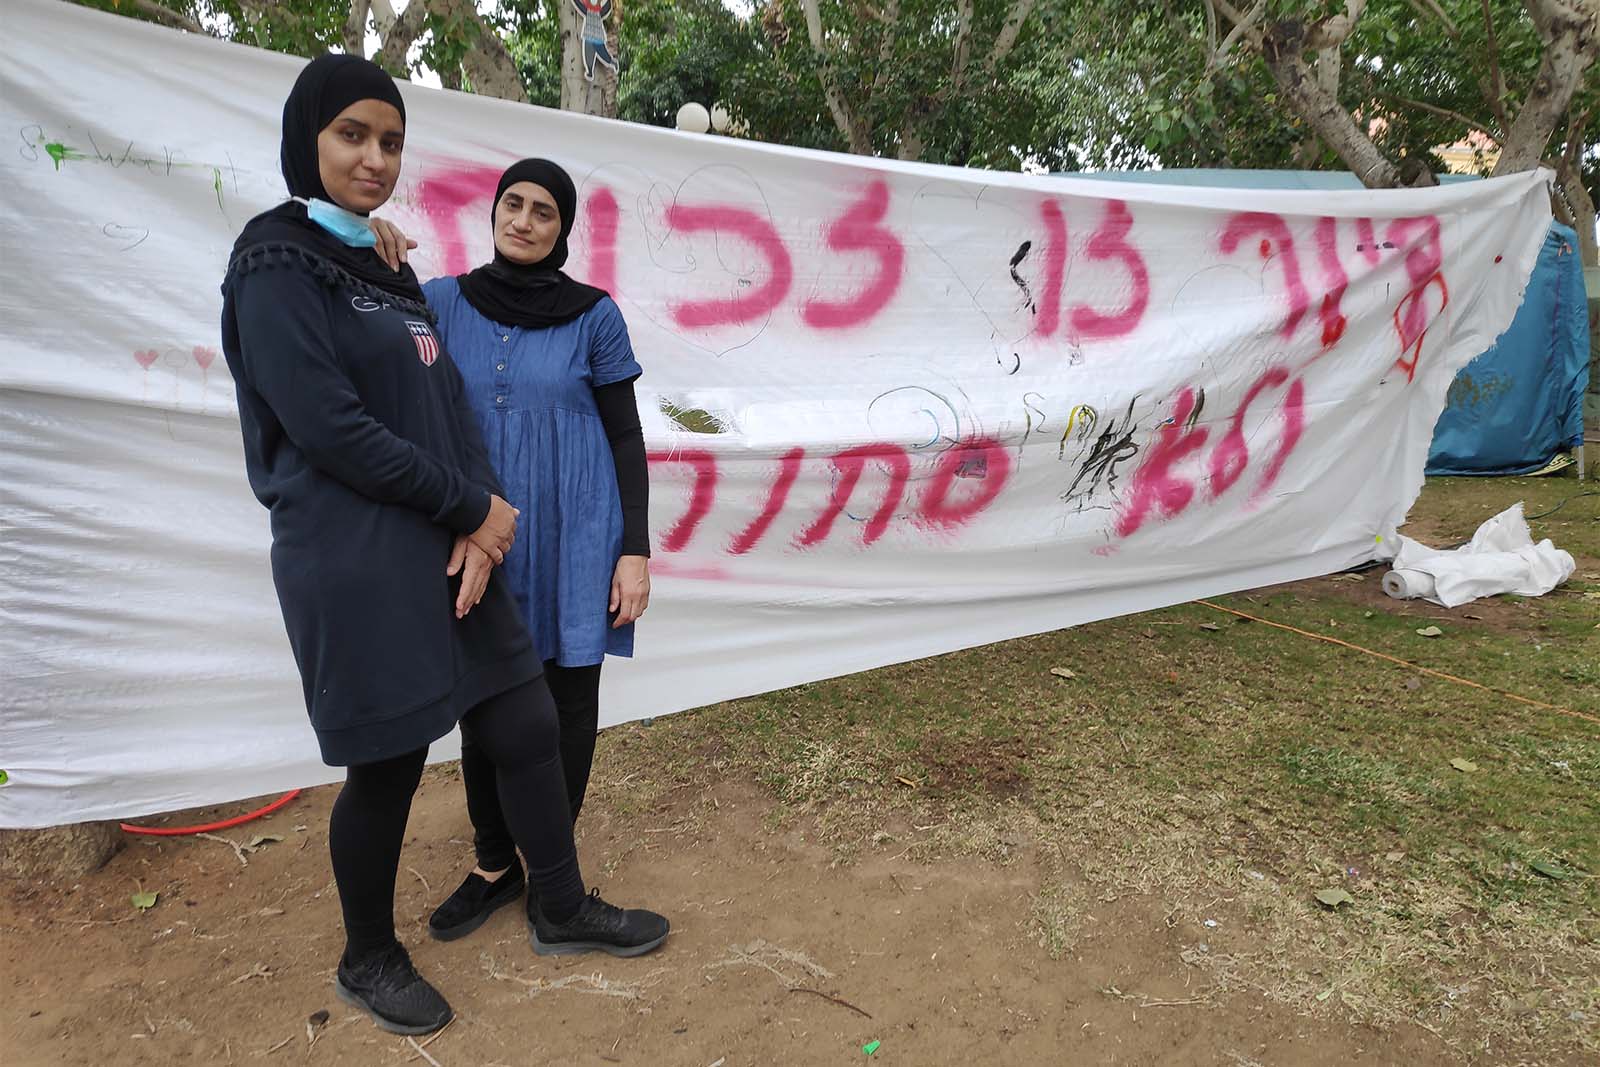 פאטמה פאור וסוראייה אבו-רמדאן במאהל המחאה ביפו (צילום: דוד טברסקי)